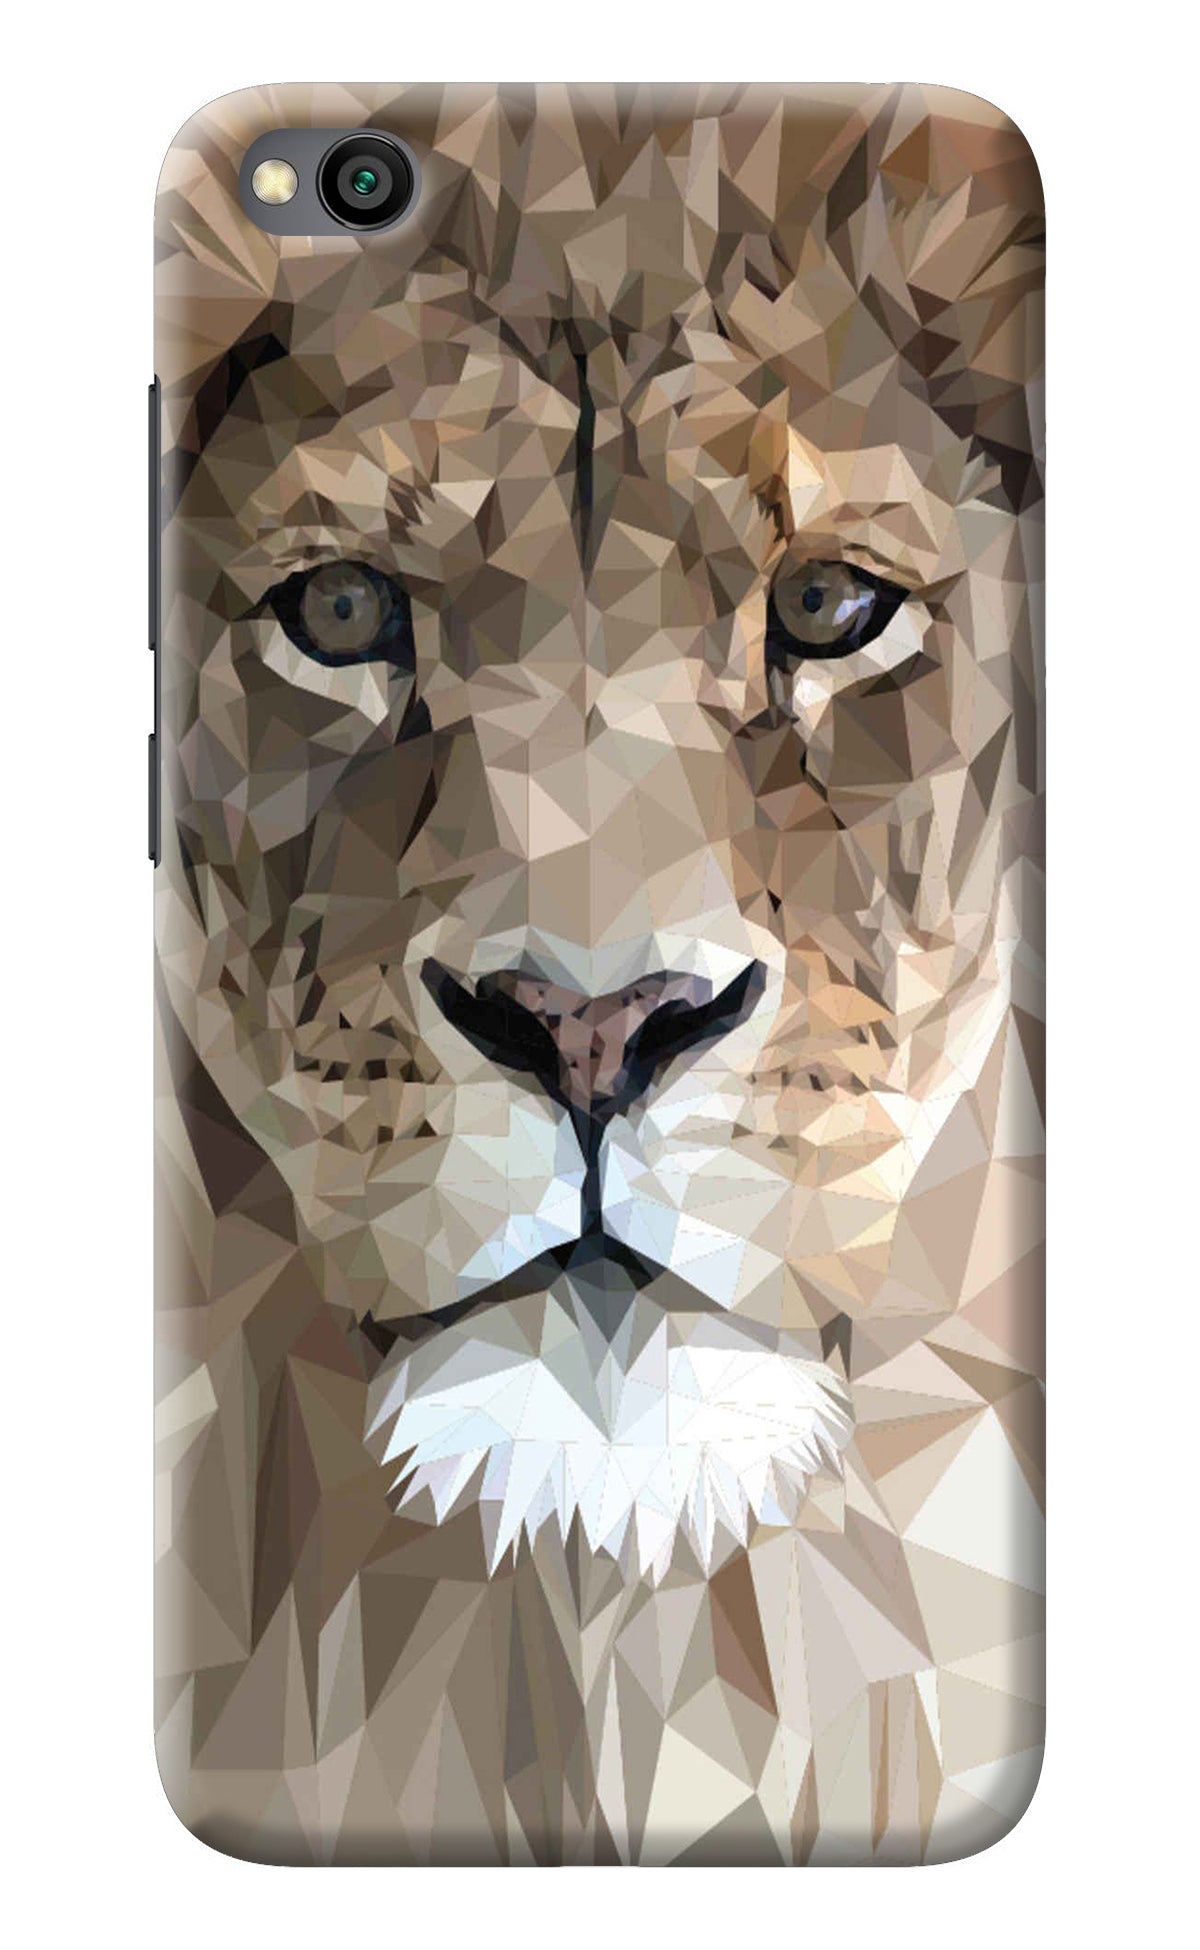 Lion Art Redmi Go Back Cover